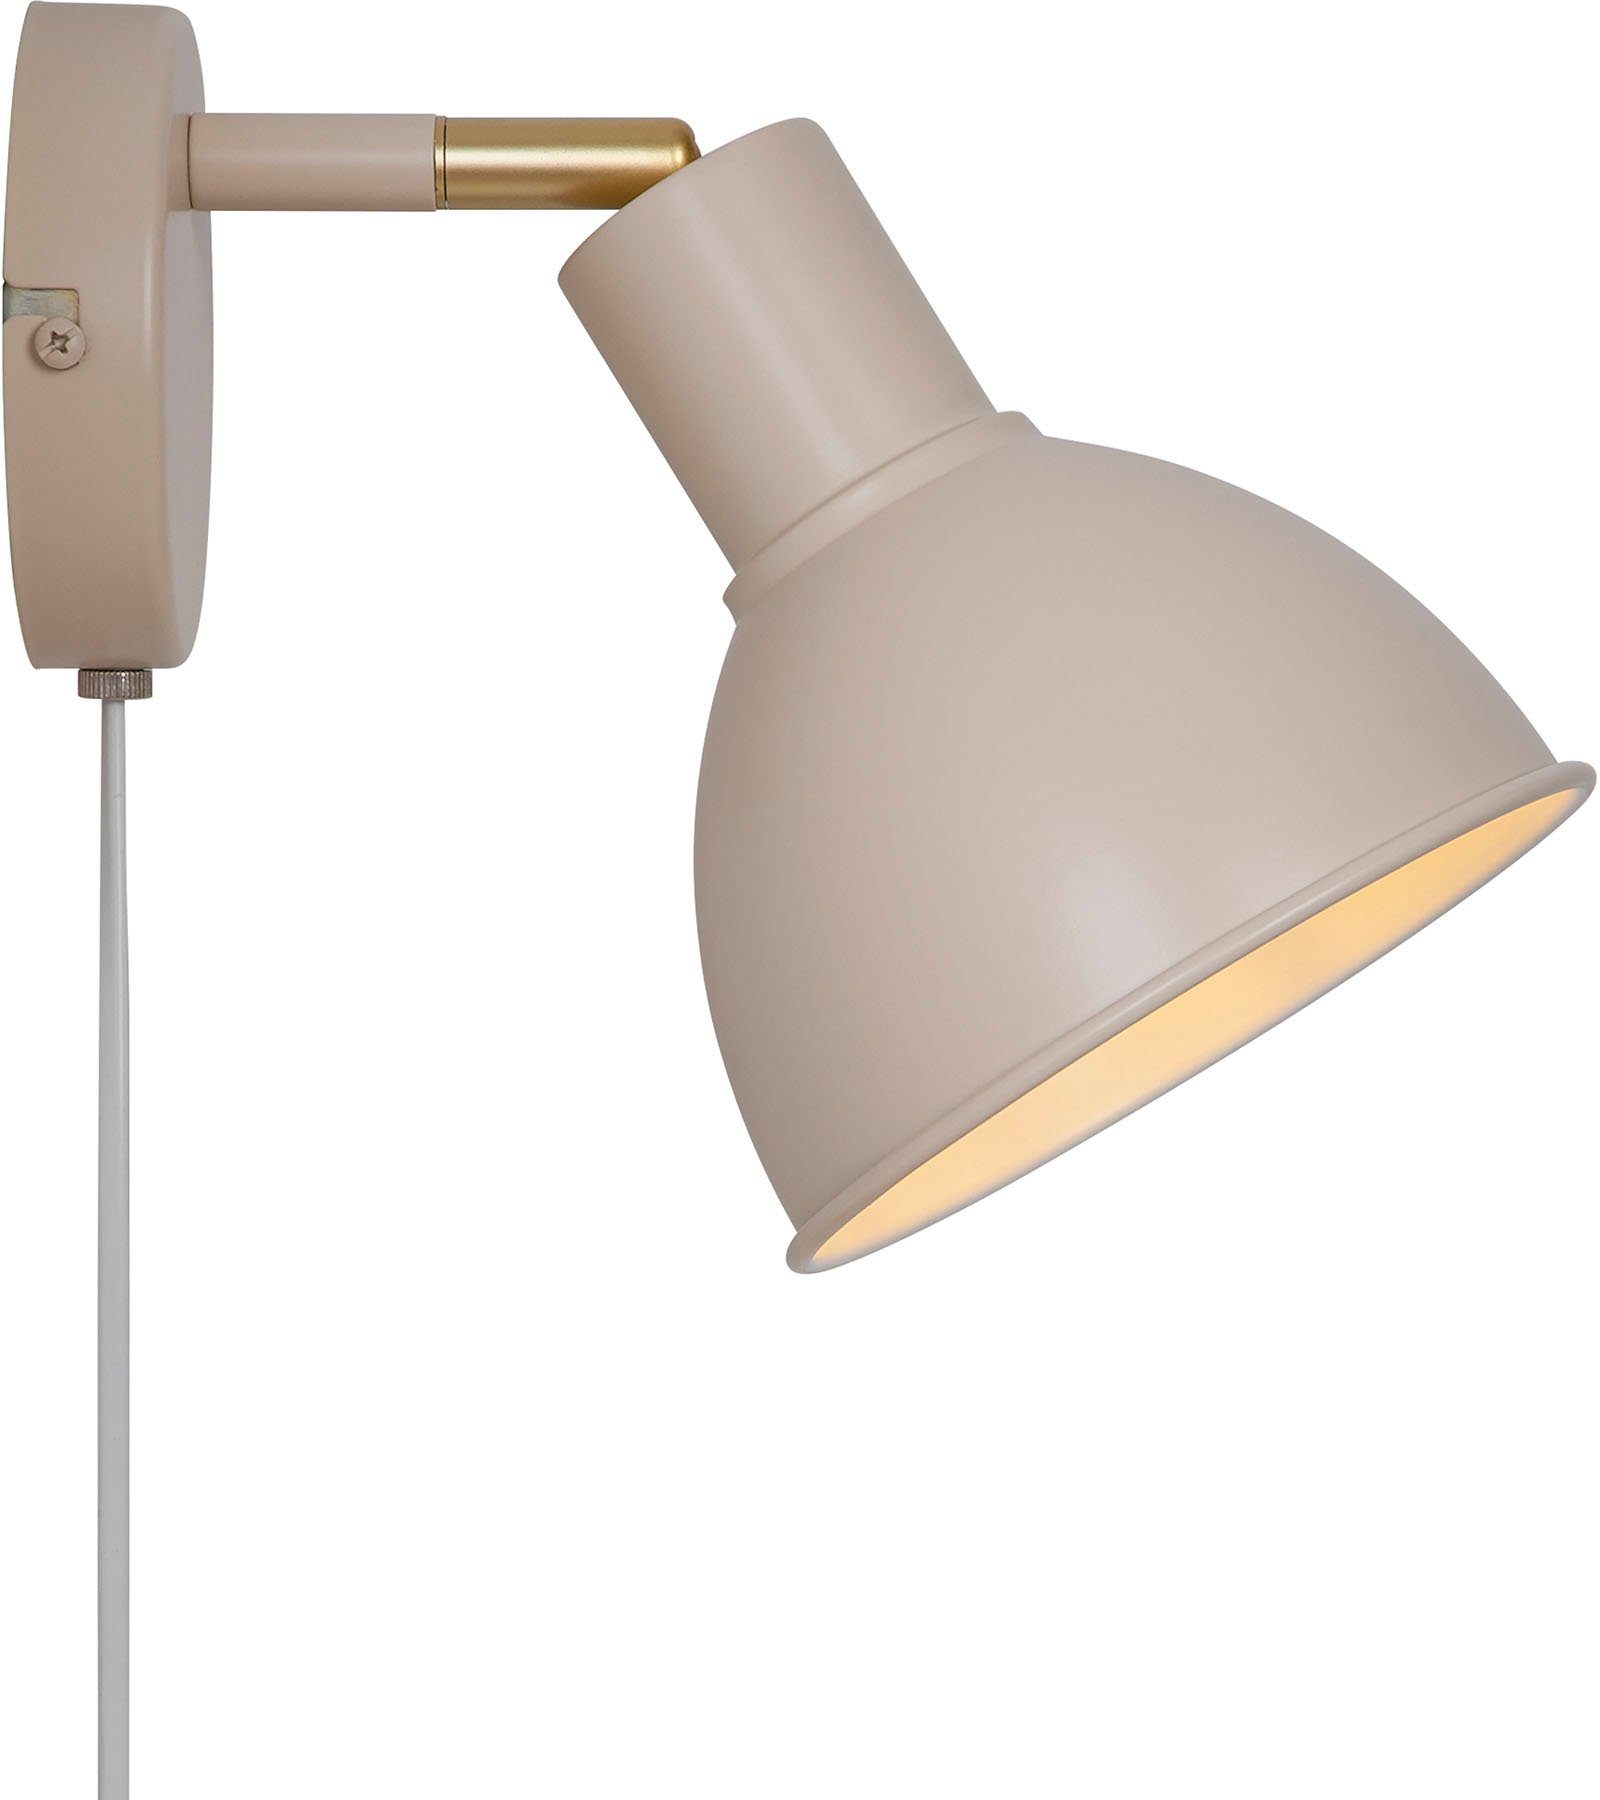 Nordlux Wandleuchte Pop, ohne Leuchtmittel, zeitgenössischer und einfacher  Stil, stabiles Metall-Gehäuse, Verstellbarer Lampenkopf für gerichtetes  Licht